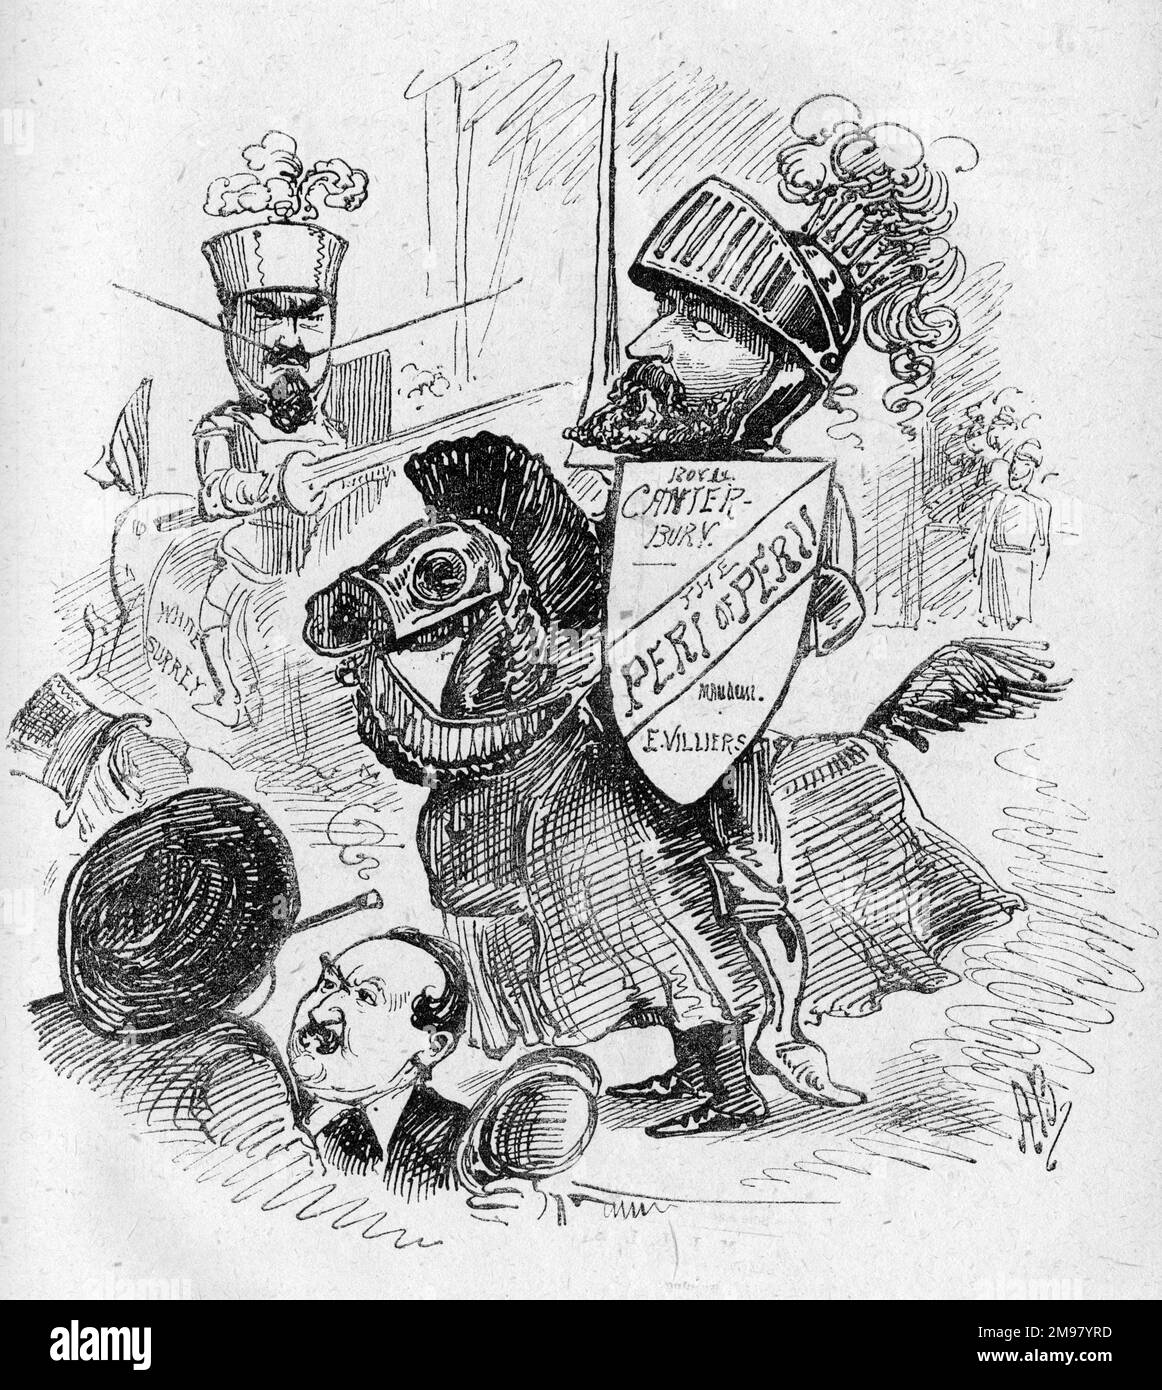 Cartoon, Eine dramatische Darbietung, zeigt rivalisierende Theatermanager, William Holland (links) und Robert Edwin Villiers (rechts), auf dem Pferderücken in Rüstung, die an einem mittelalterlichen Turnier teilnehmen. Stockfoto